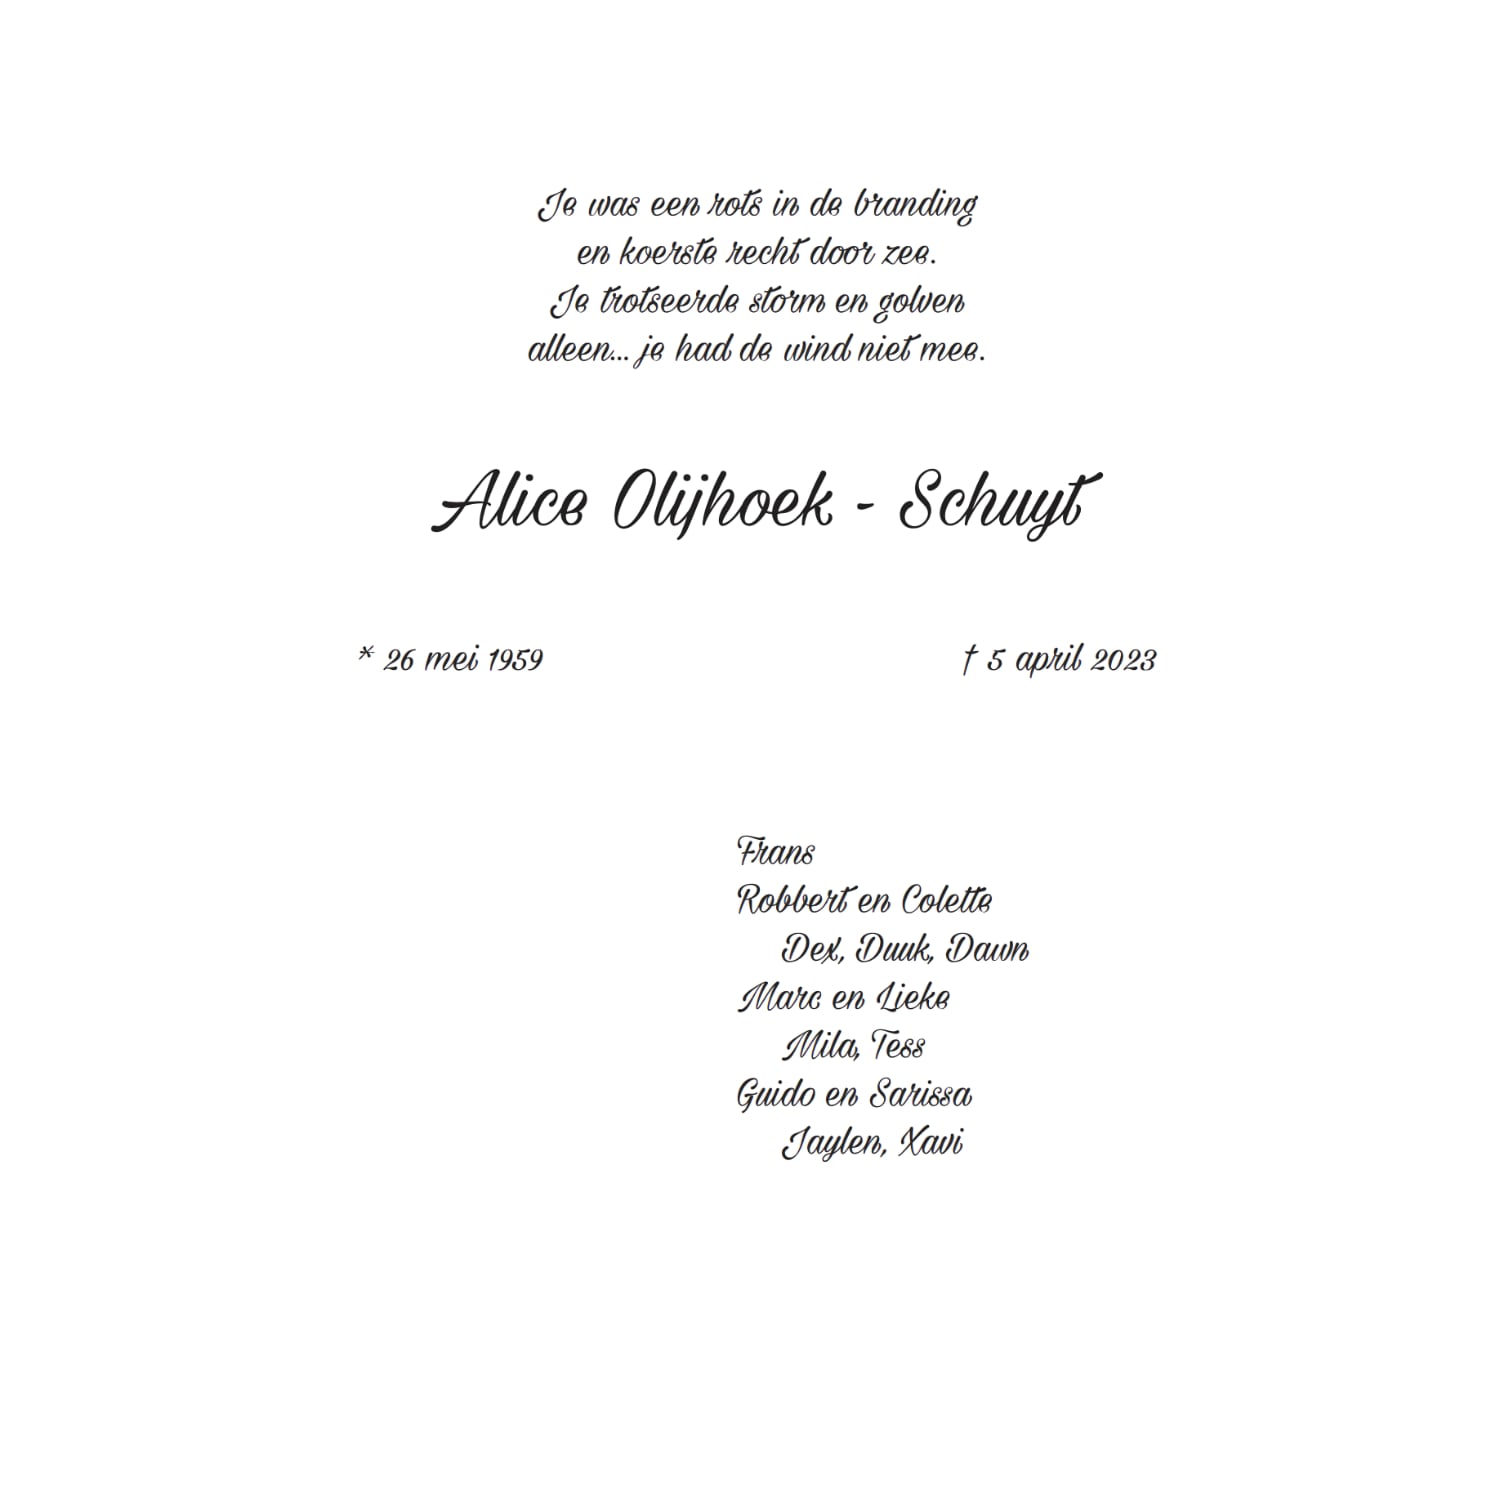 Rouwkaart Alice Olijhoek - Schuijt binnenkant